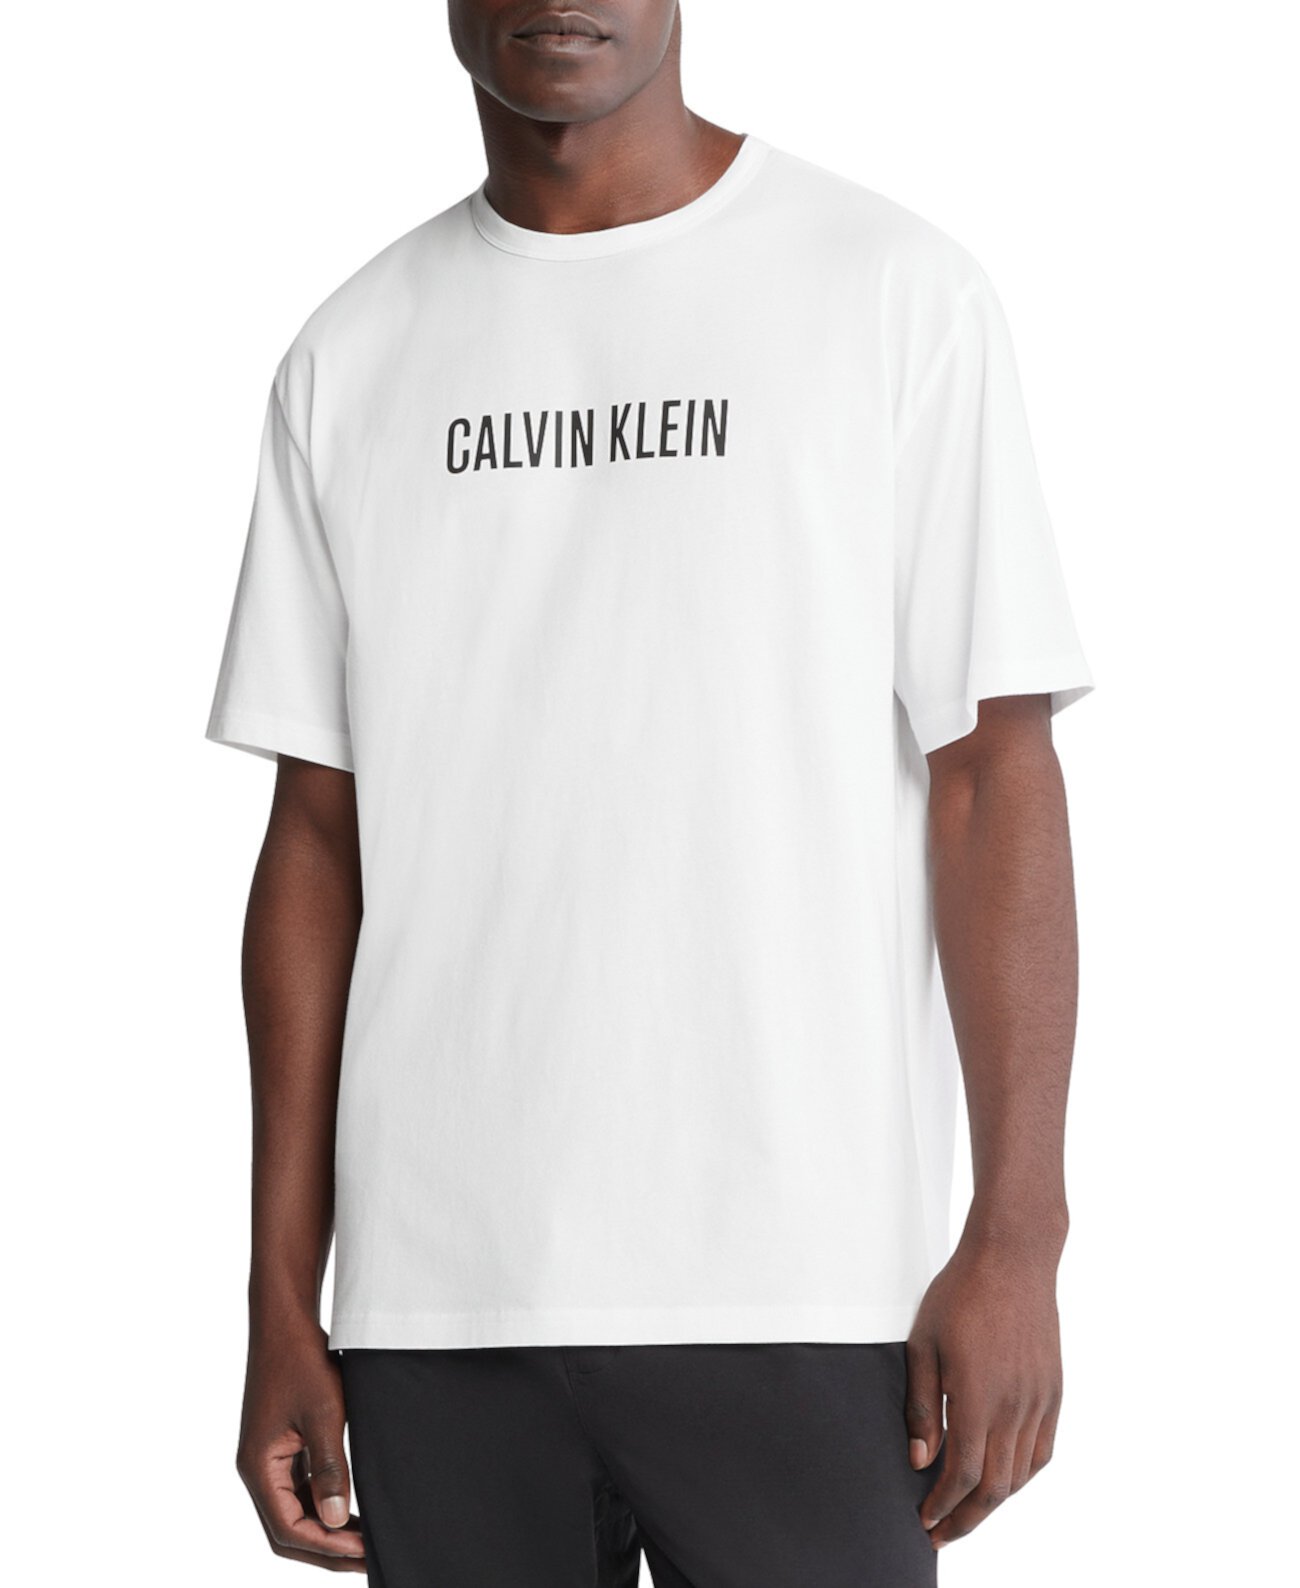 Мужская футболка с круглым вырезом и логотипом Calvin Klein